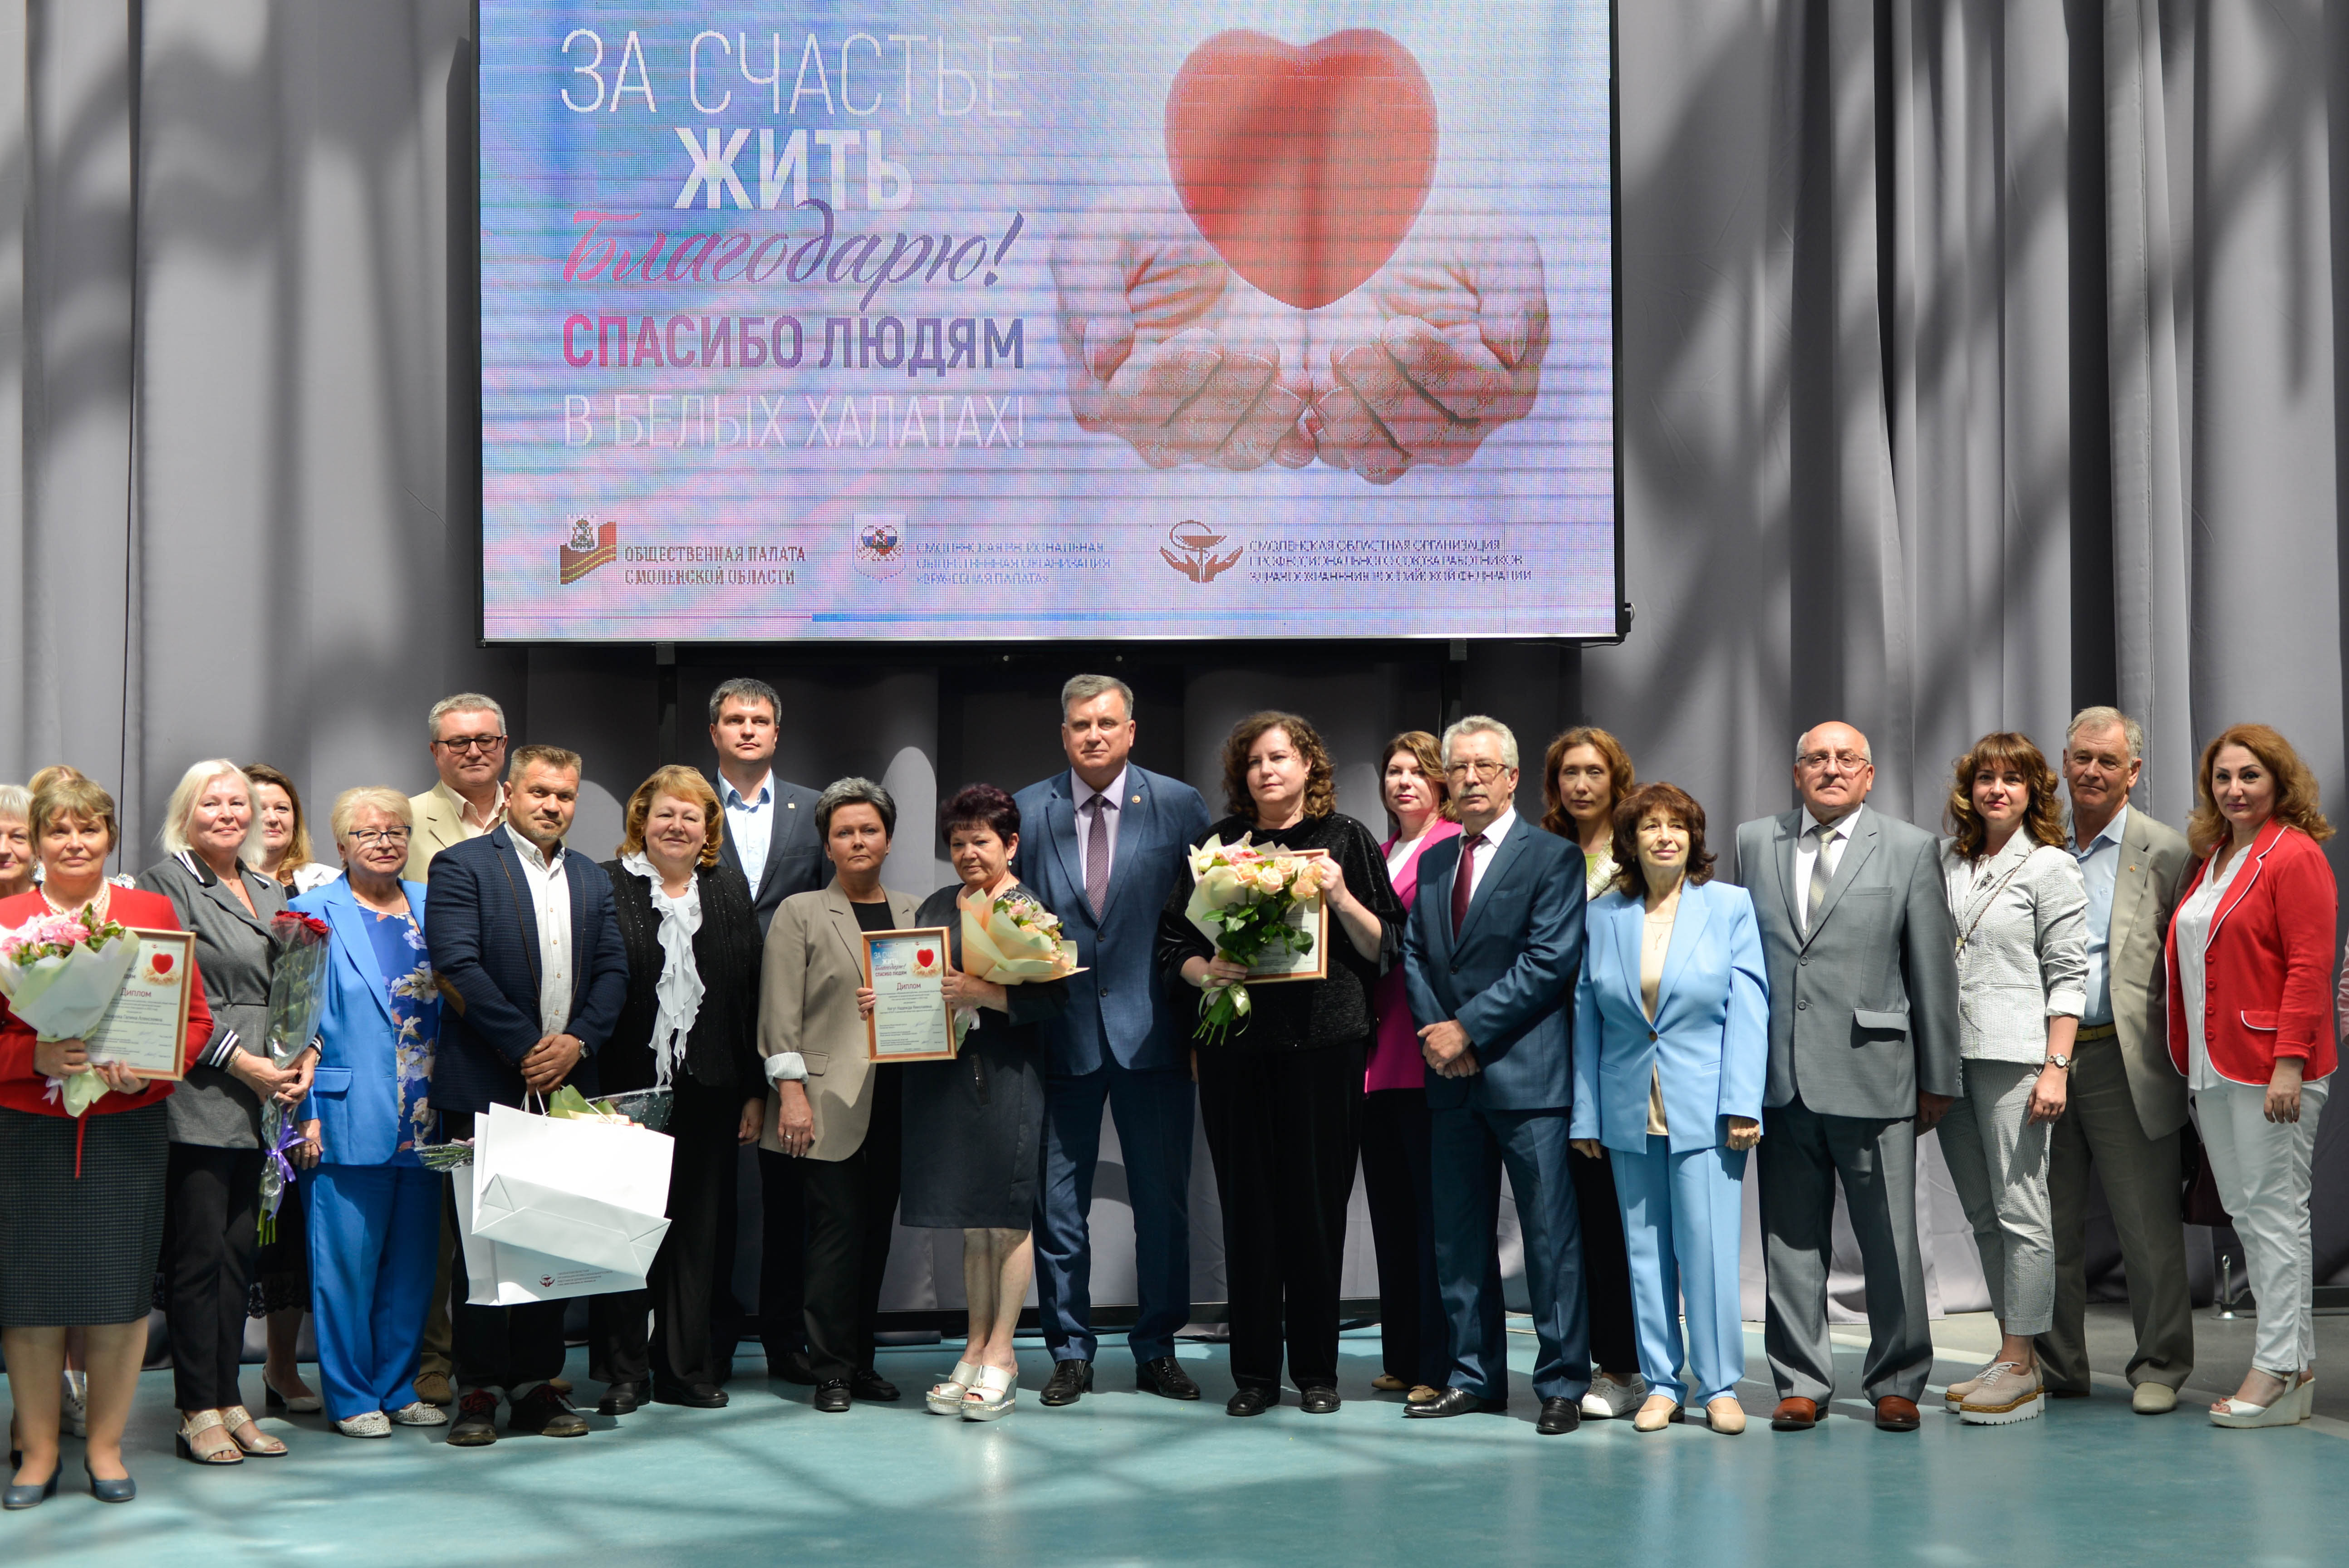 В Смоленске подвели итоги региональной акции «За счастье жить благодарю!»